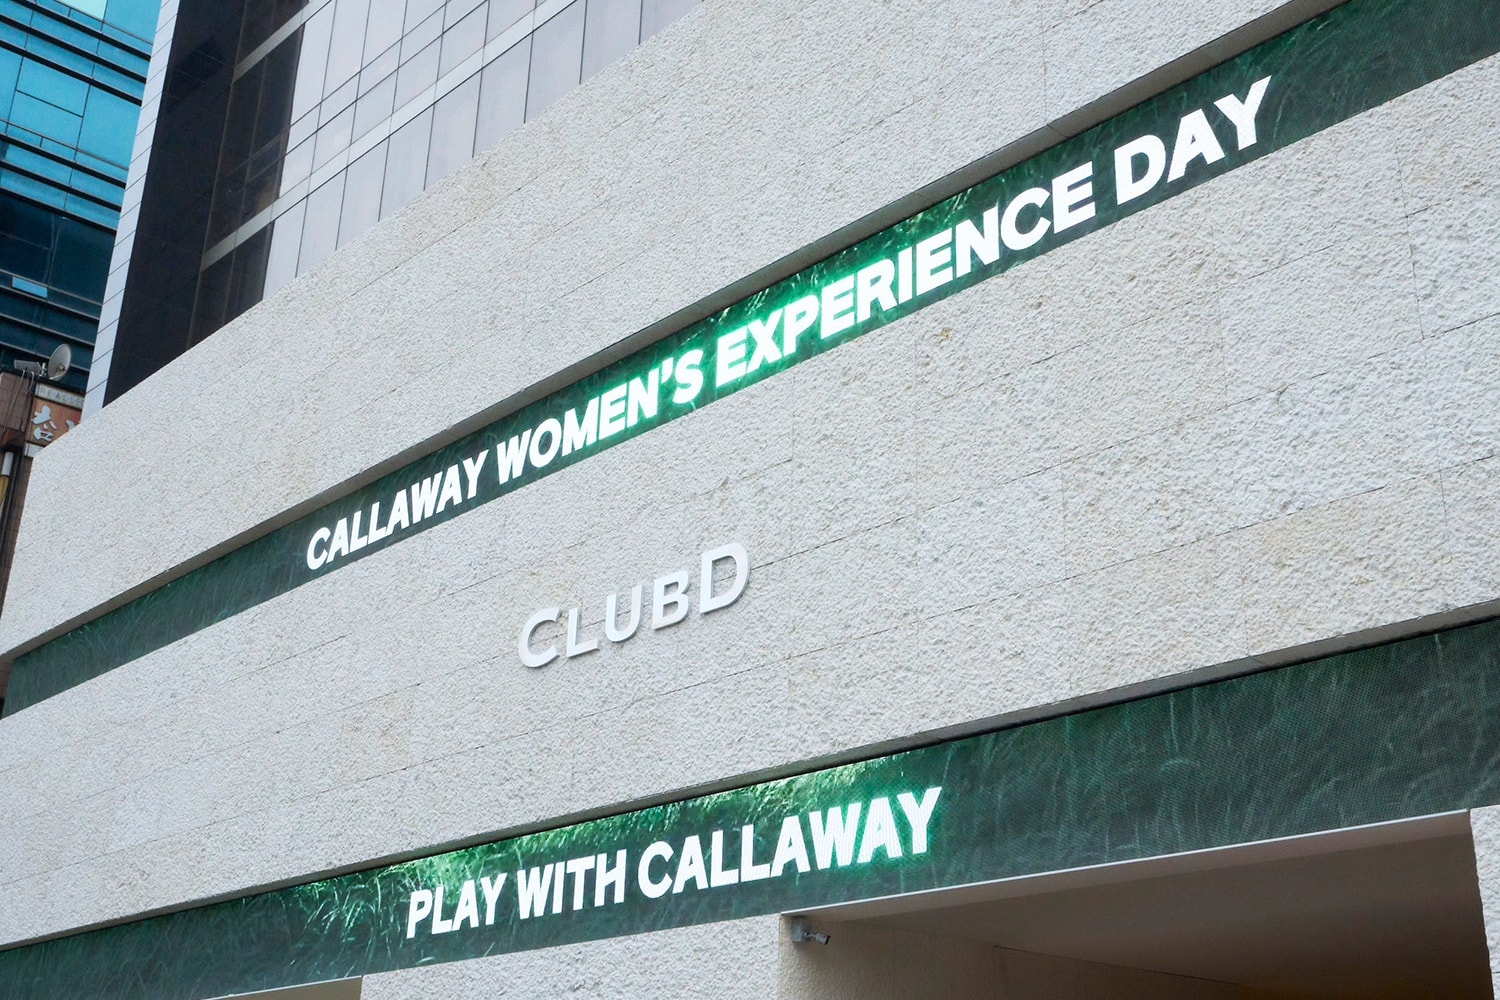 캘러웨이골프, ‘Callaway Women’s Gear Experience Day’ 개최 golf